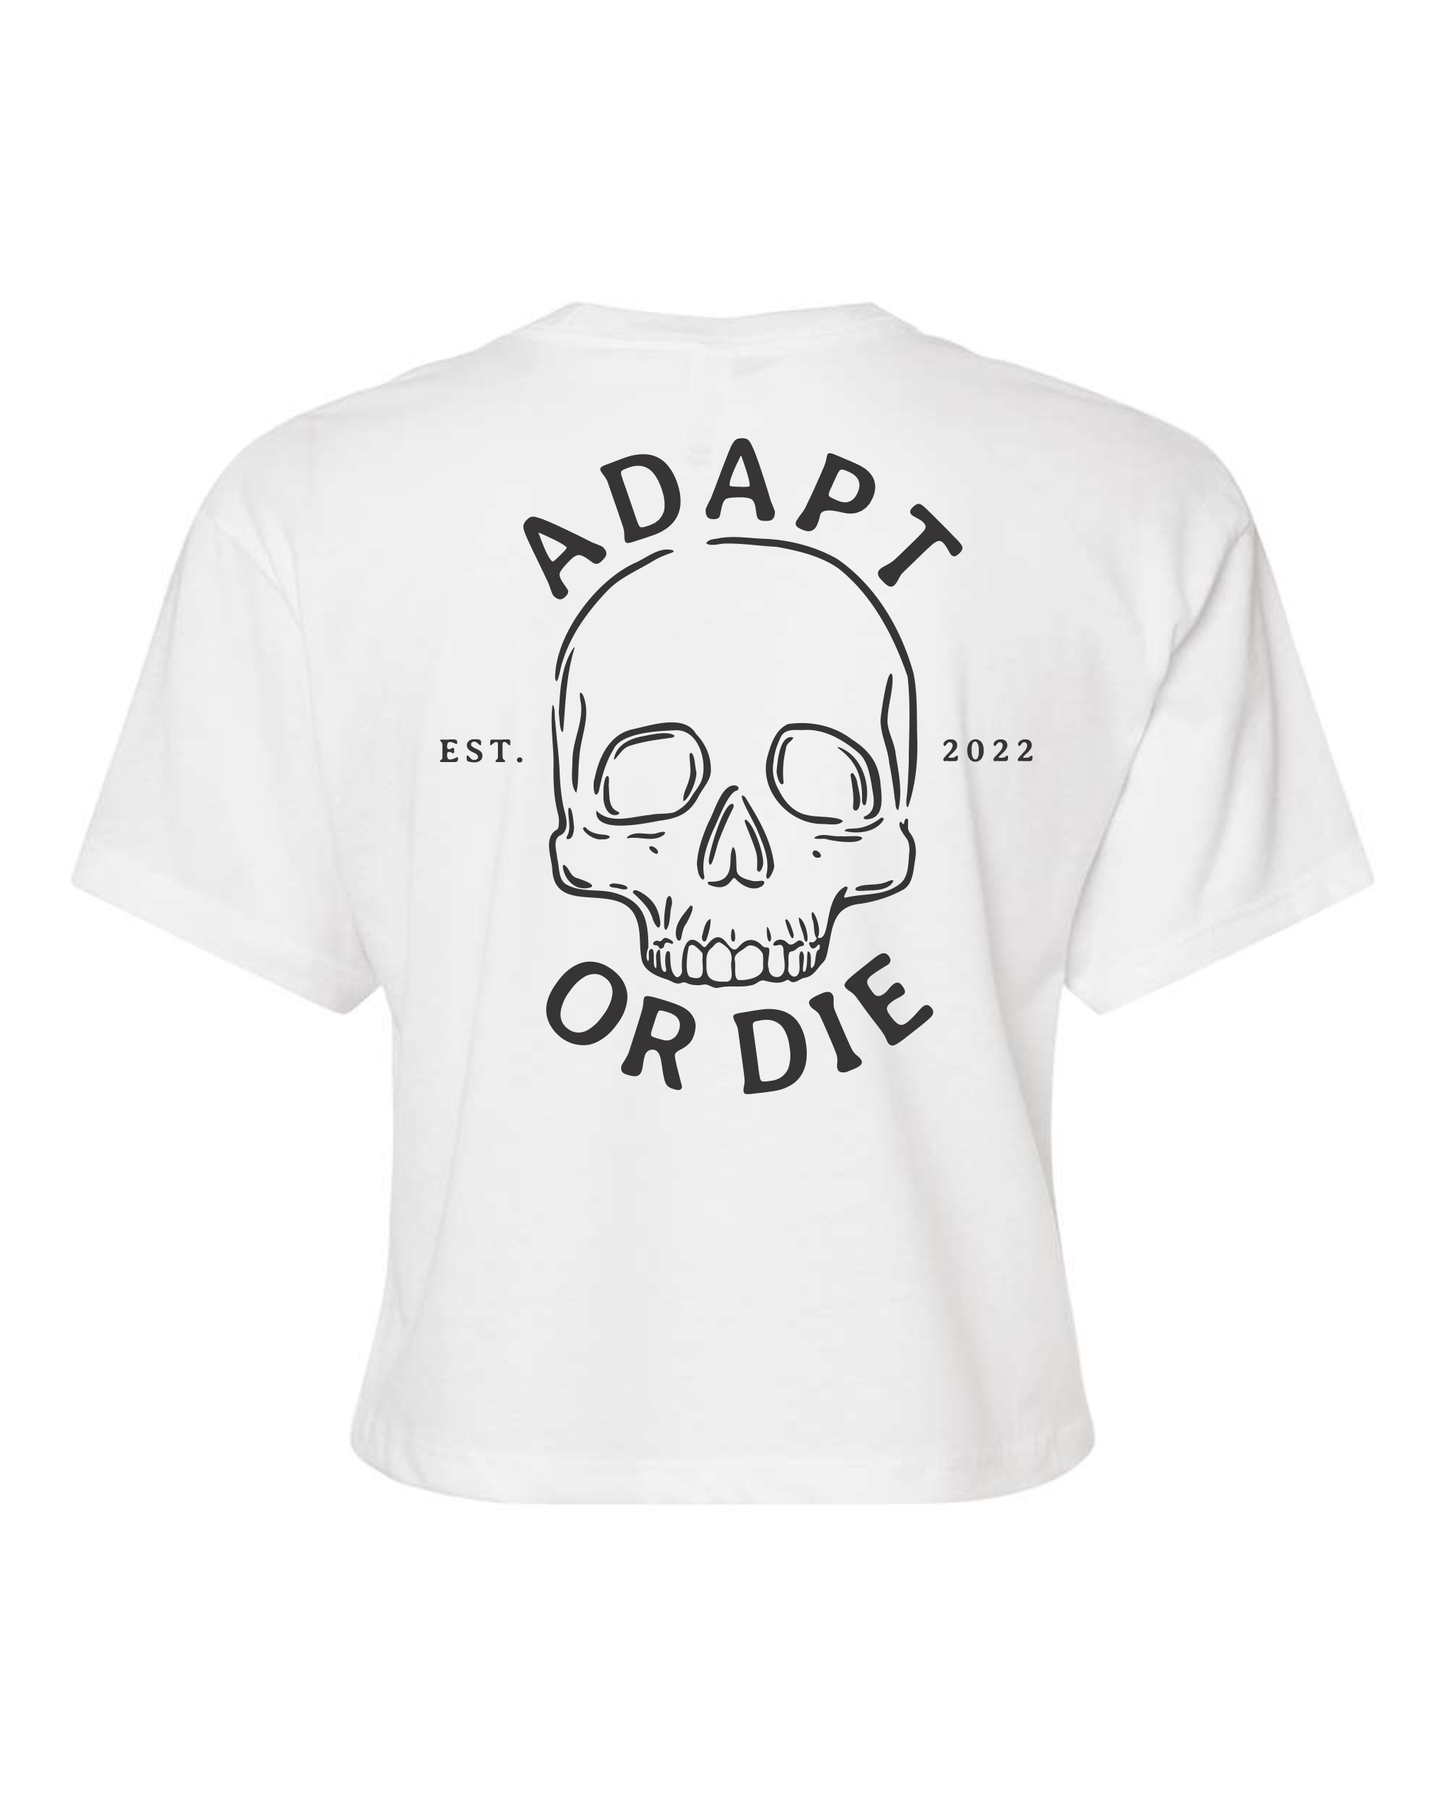 Adapt or Die Crop Top